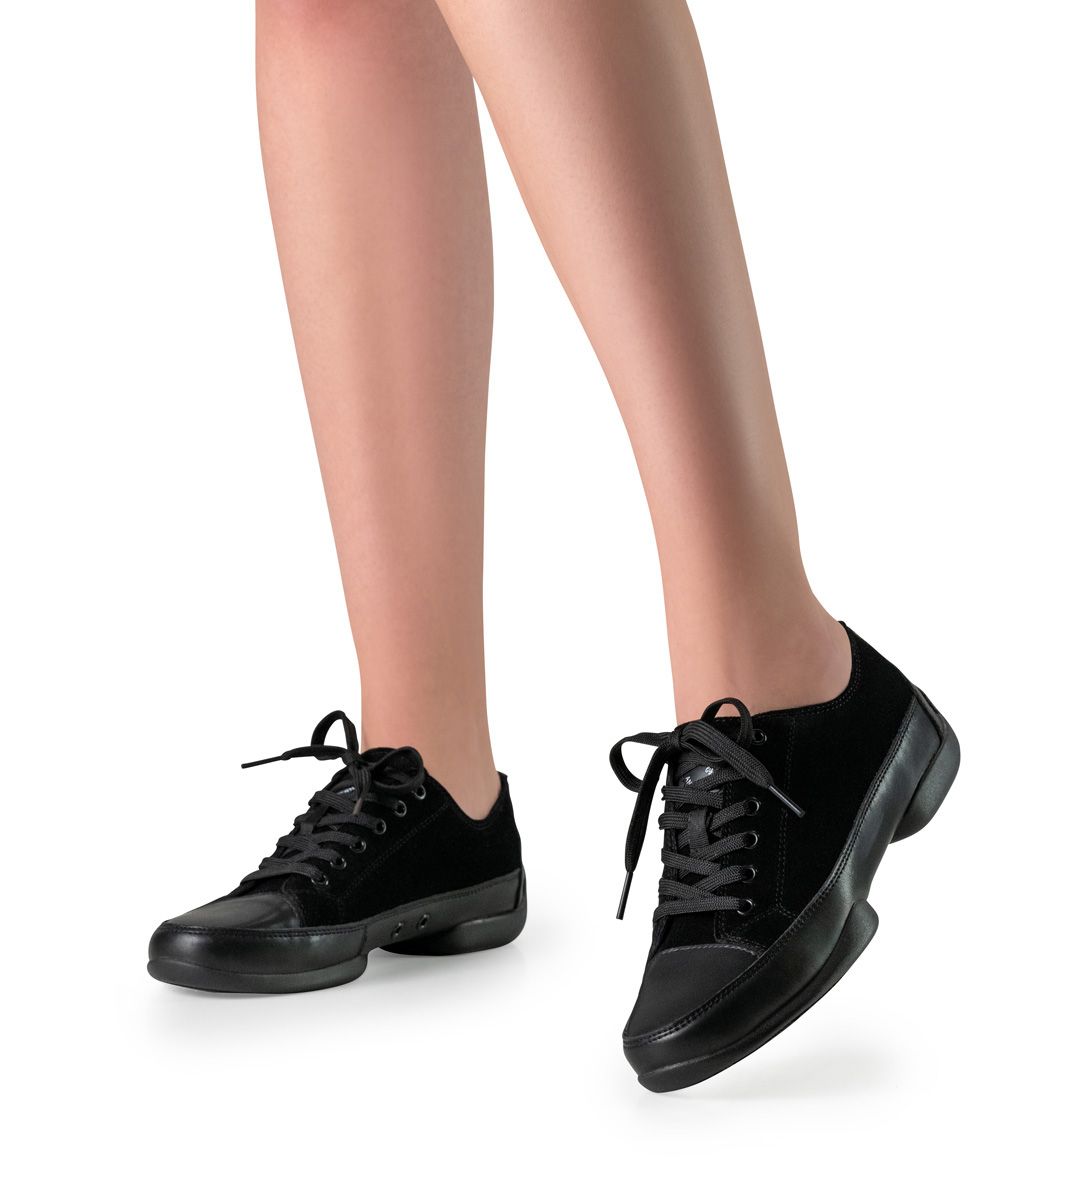 Black dance shoe for women werner kern